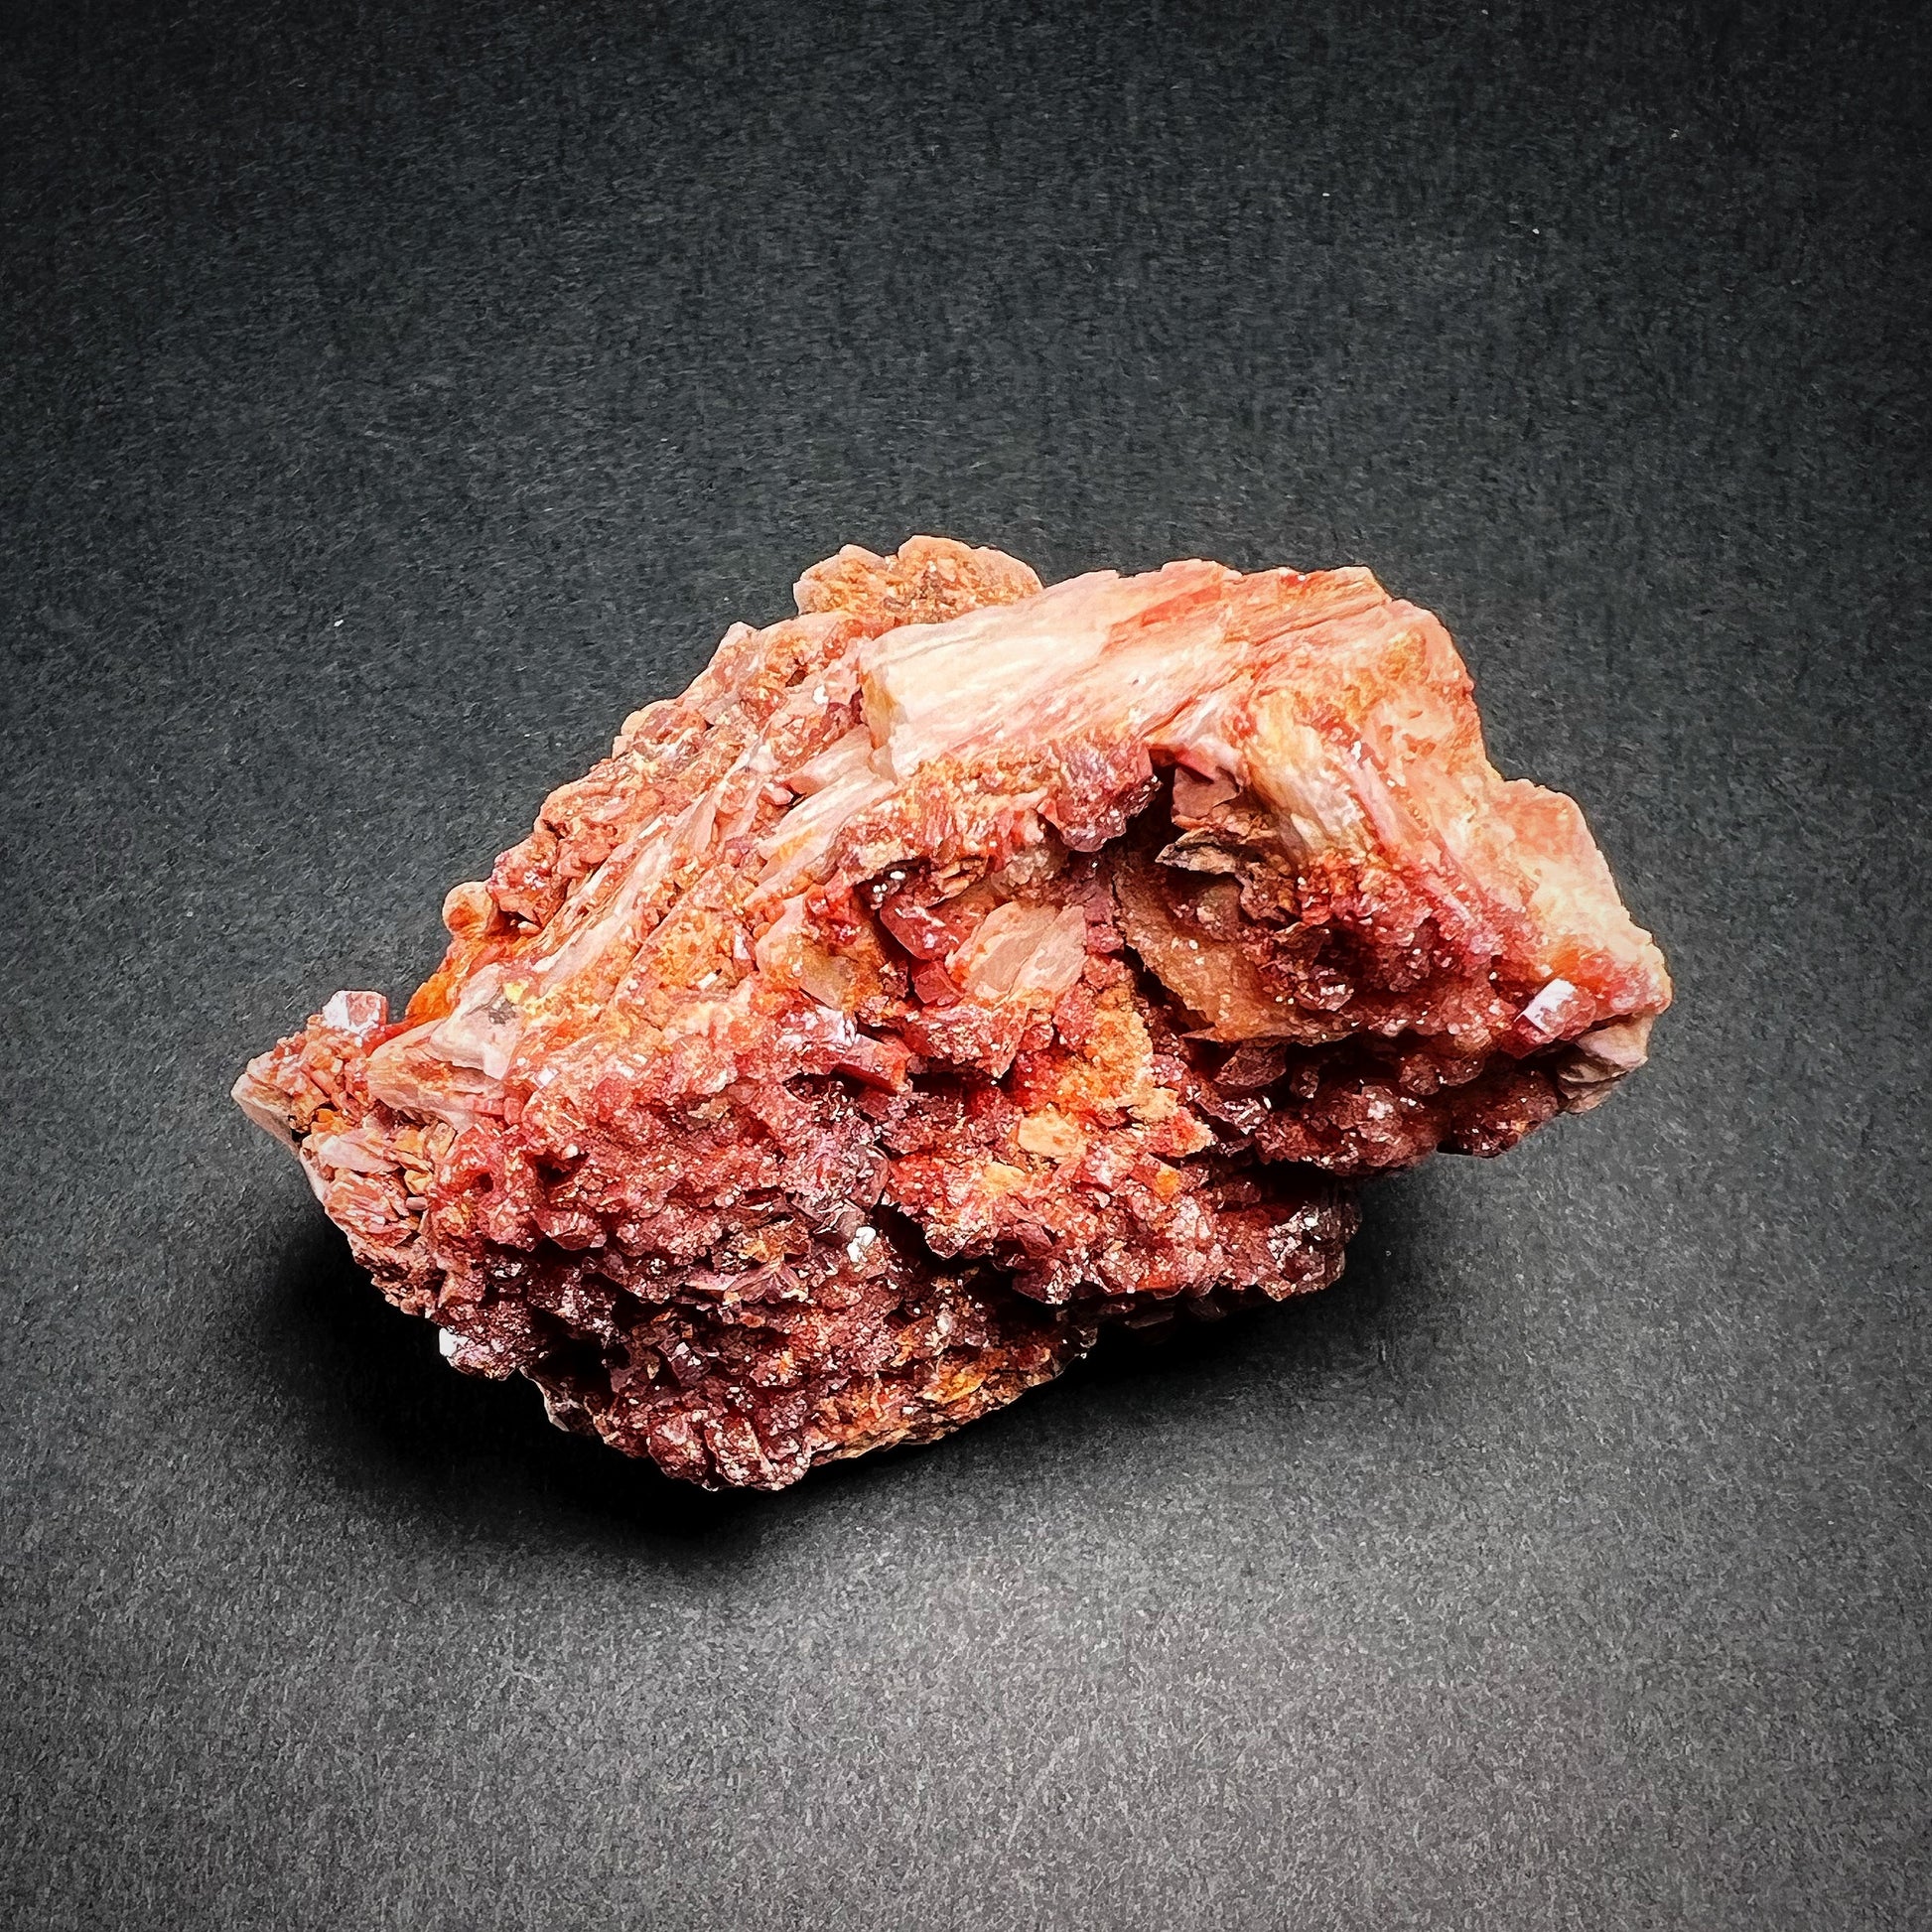 Medium vanadiniittikristalliklusteri kiinnittyneenä pohjakiveen - Medium vanadinite crystal cluster in matrix stone